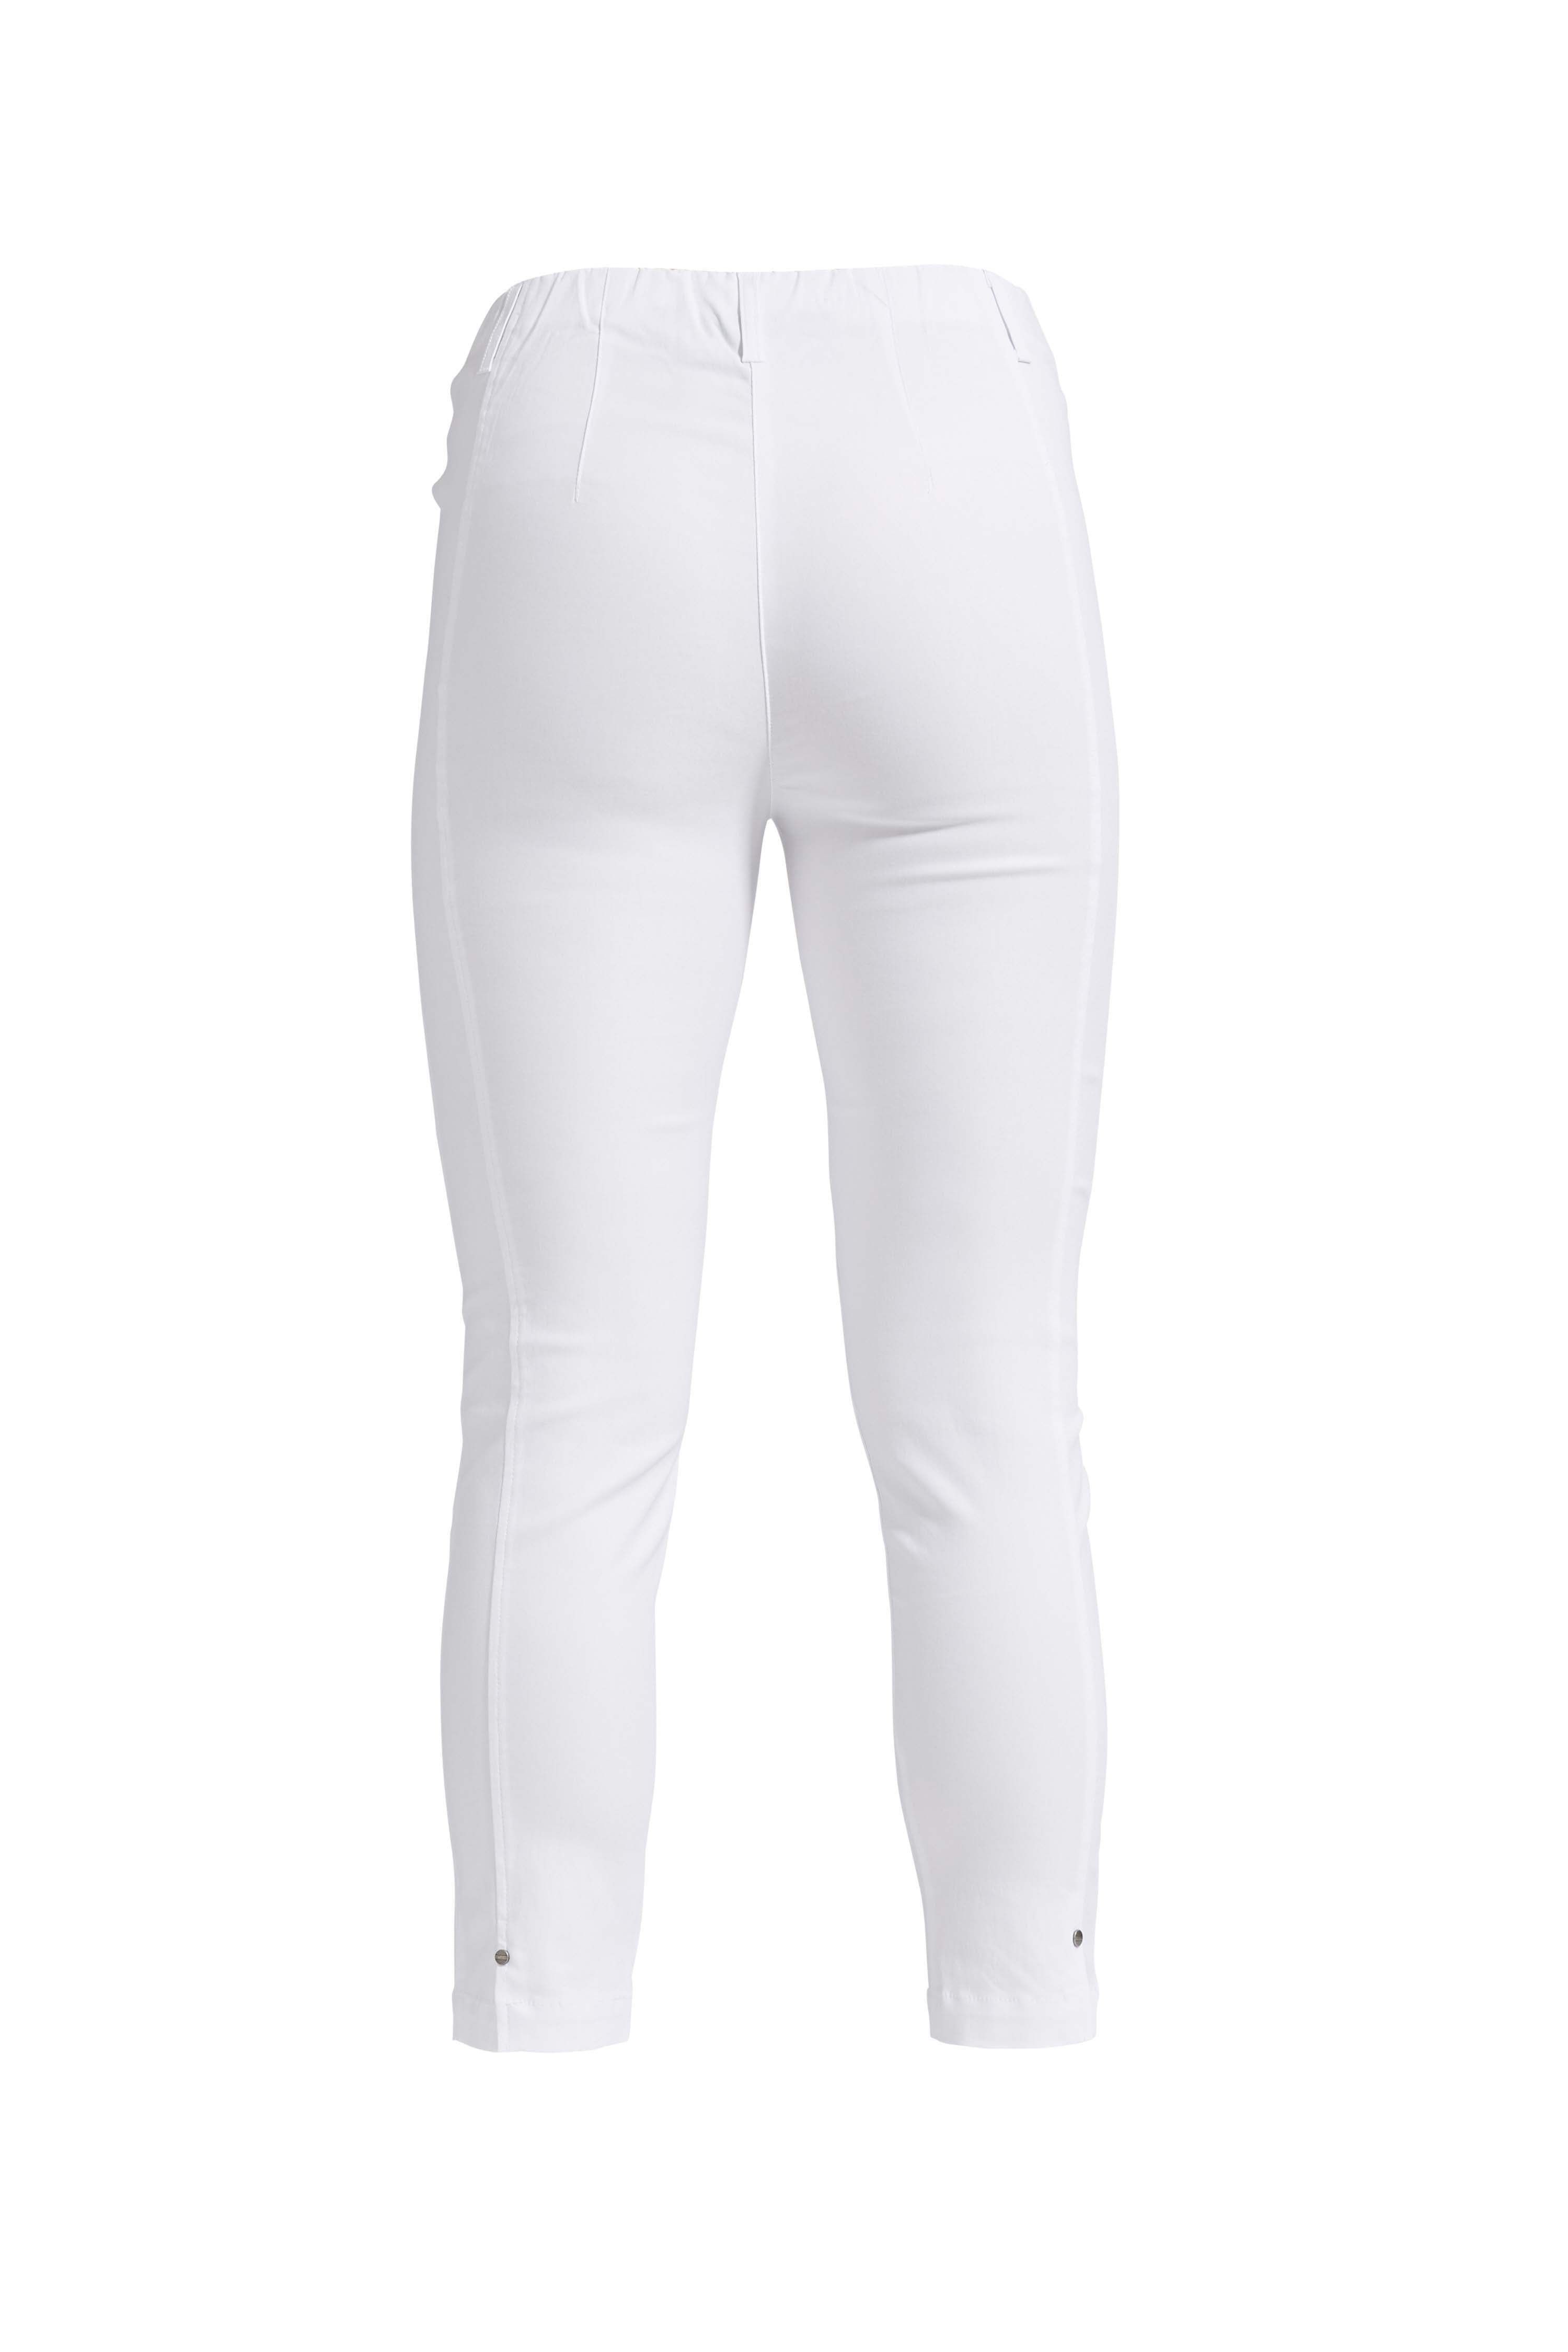 LAURIE Chloe Slim Crop Trousers SLIM 10970 White